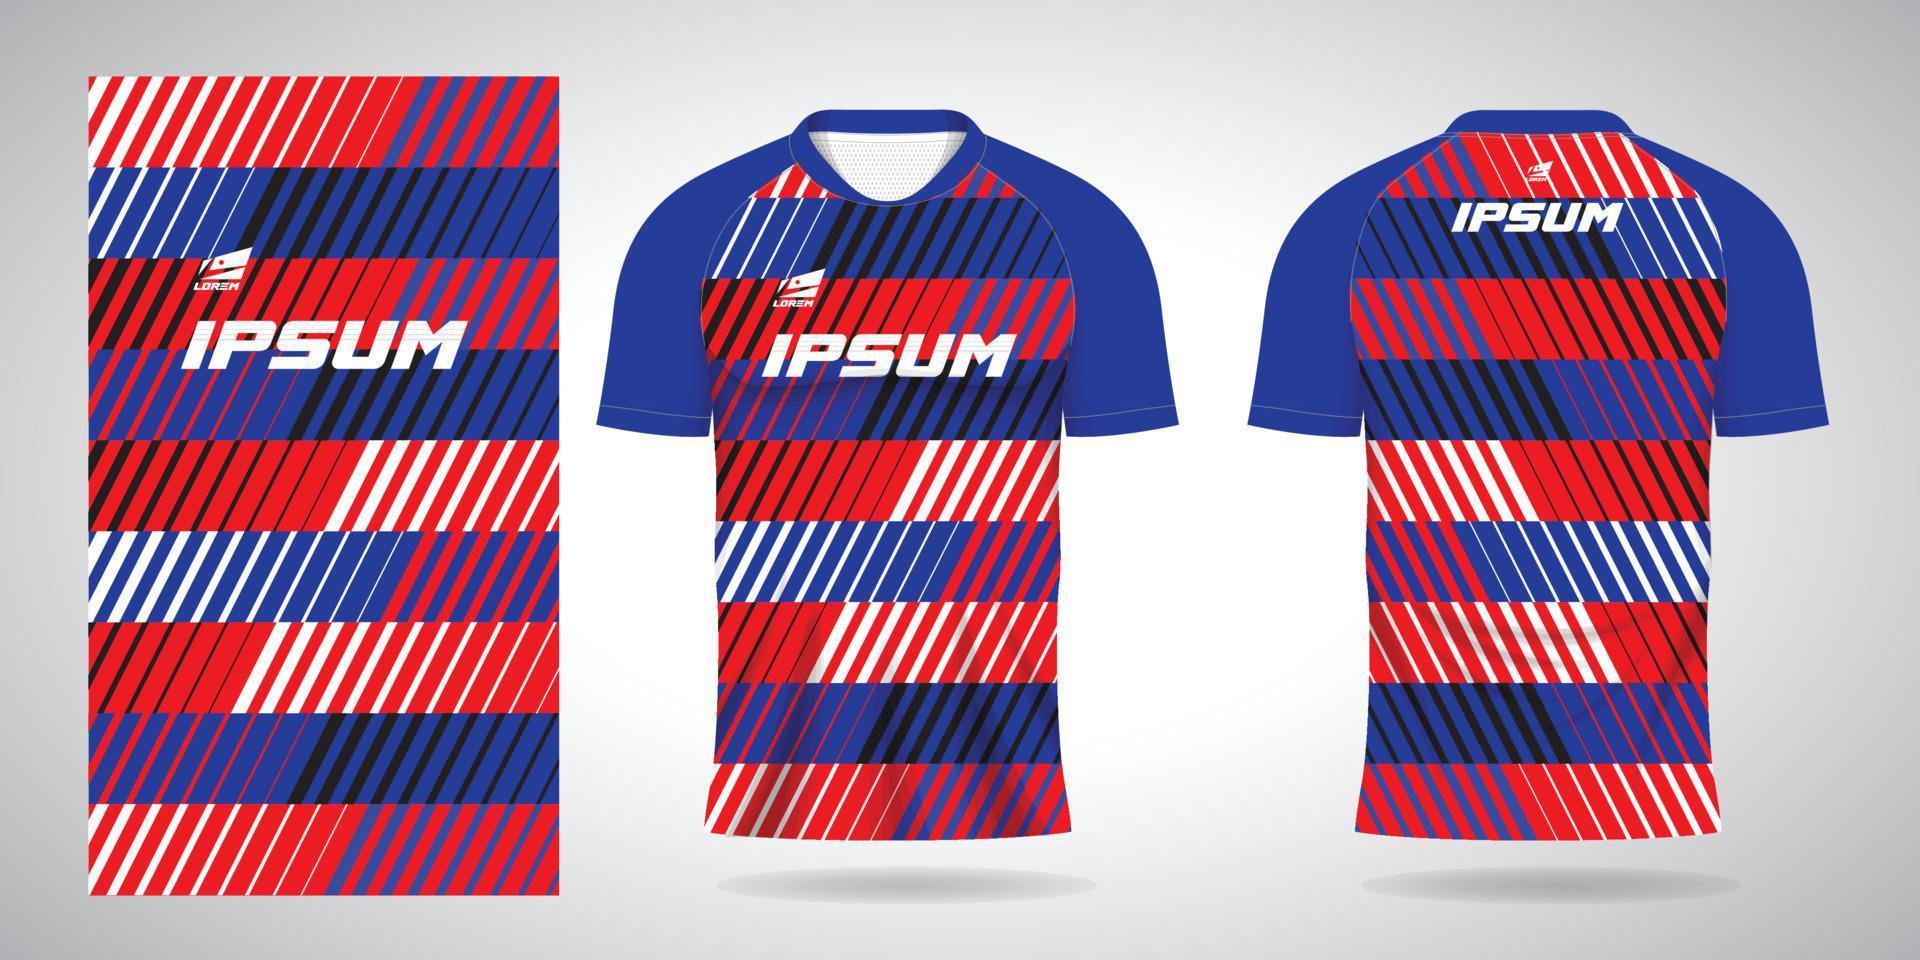 blauw rood zwart wit overhemd sport- Jersey sjabloon voor team uniformen en voetbal vector